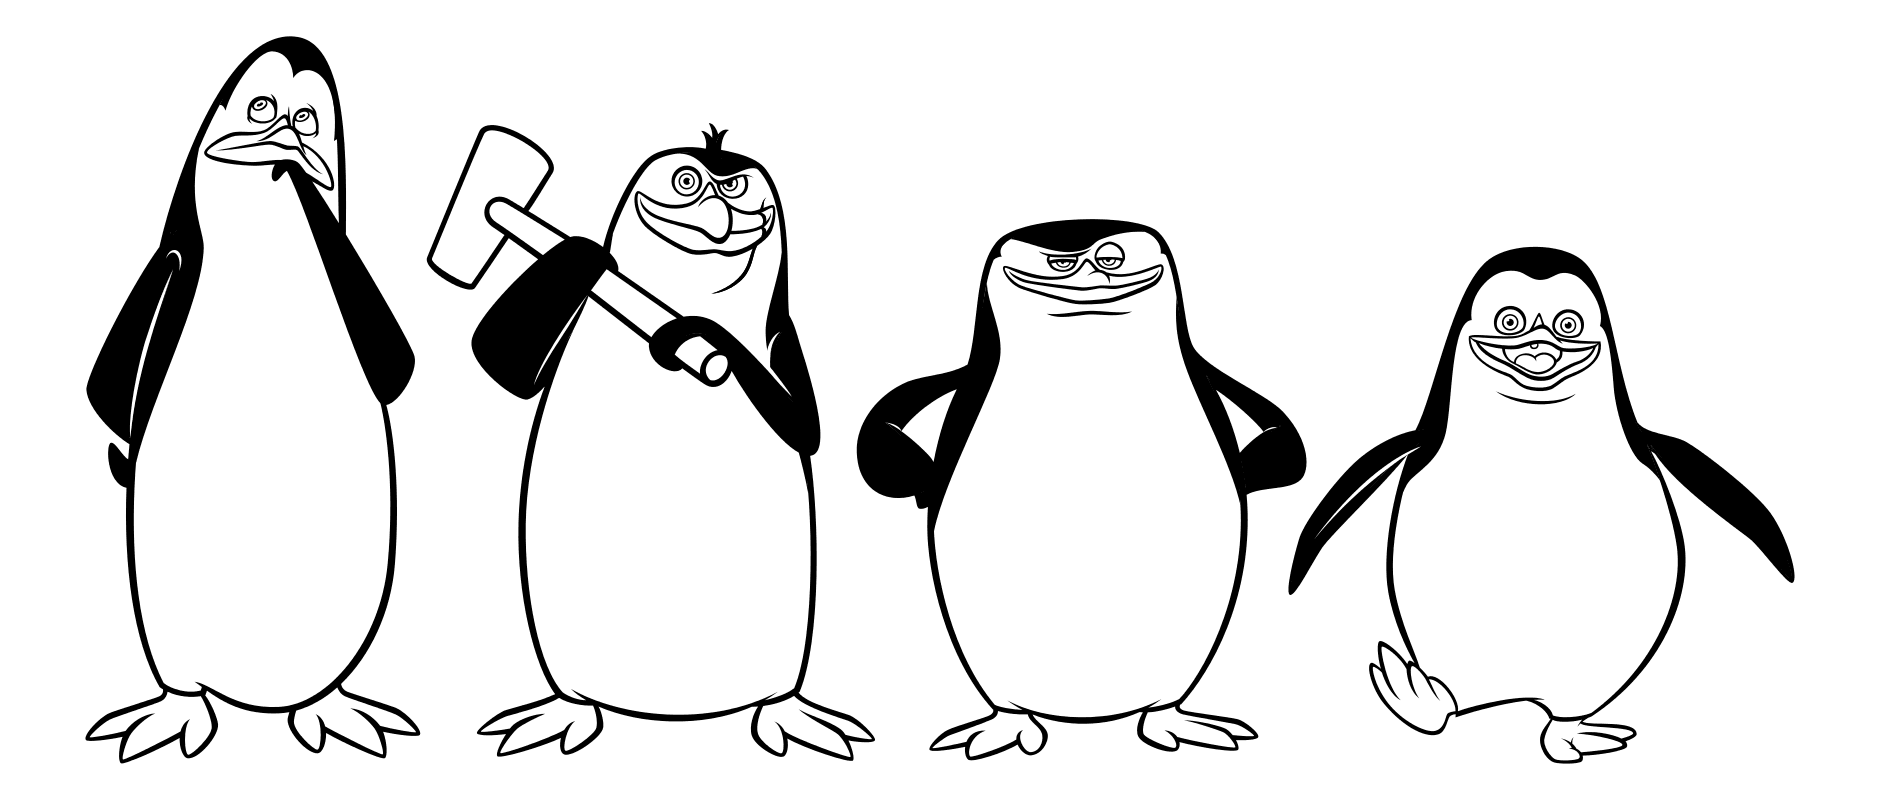 Раскраска Мадагаскар. Раскраска Пингвины Мадагаскара